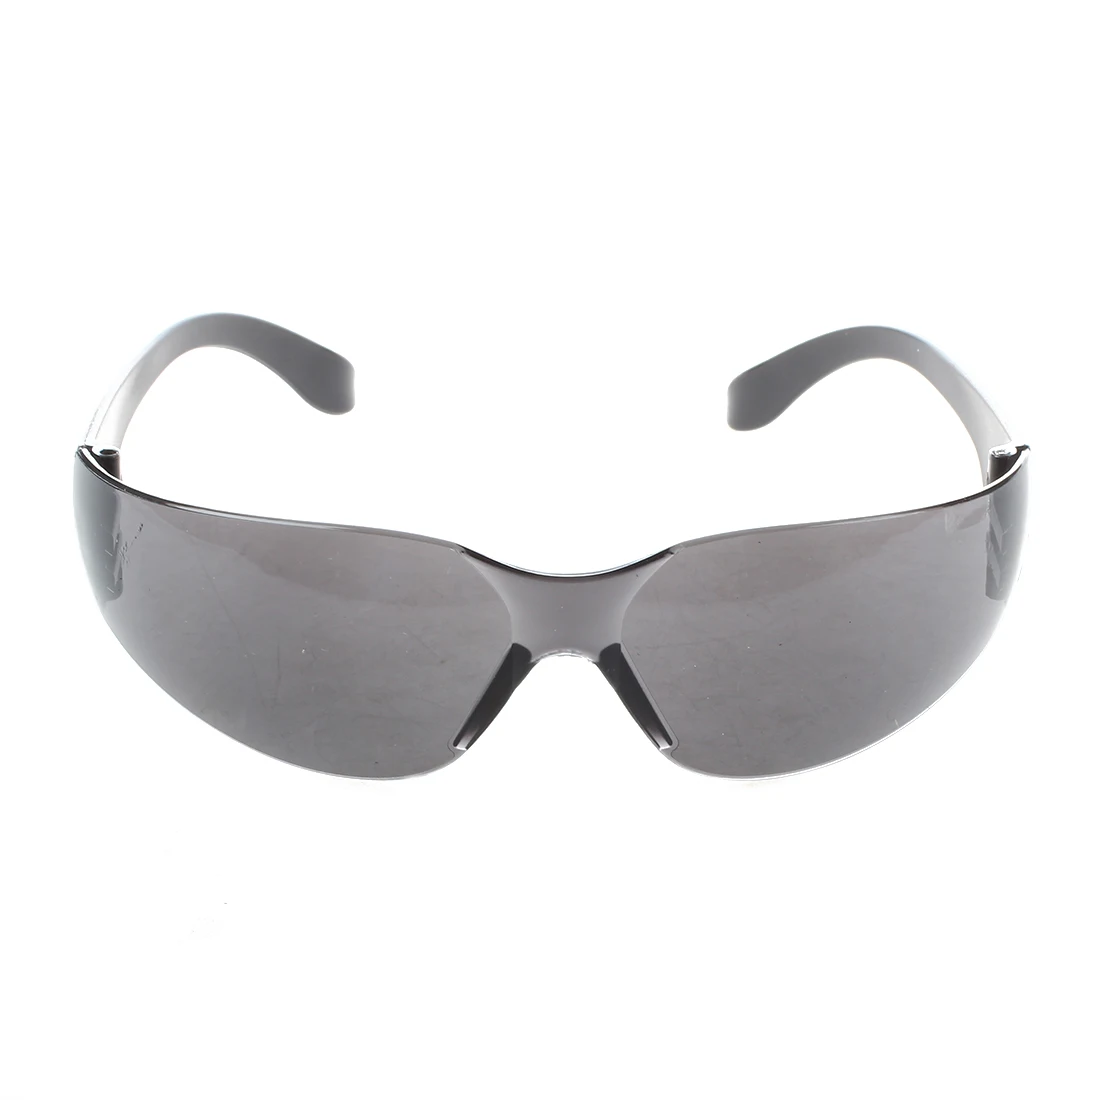 2 шт. из MOOL Black Lab спортивные защитные очки спецификации защита глаз